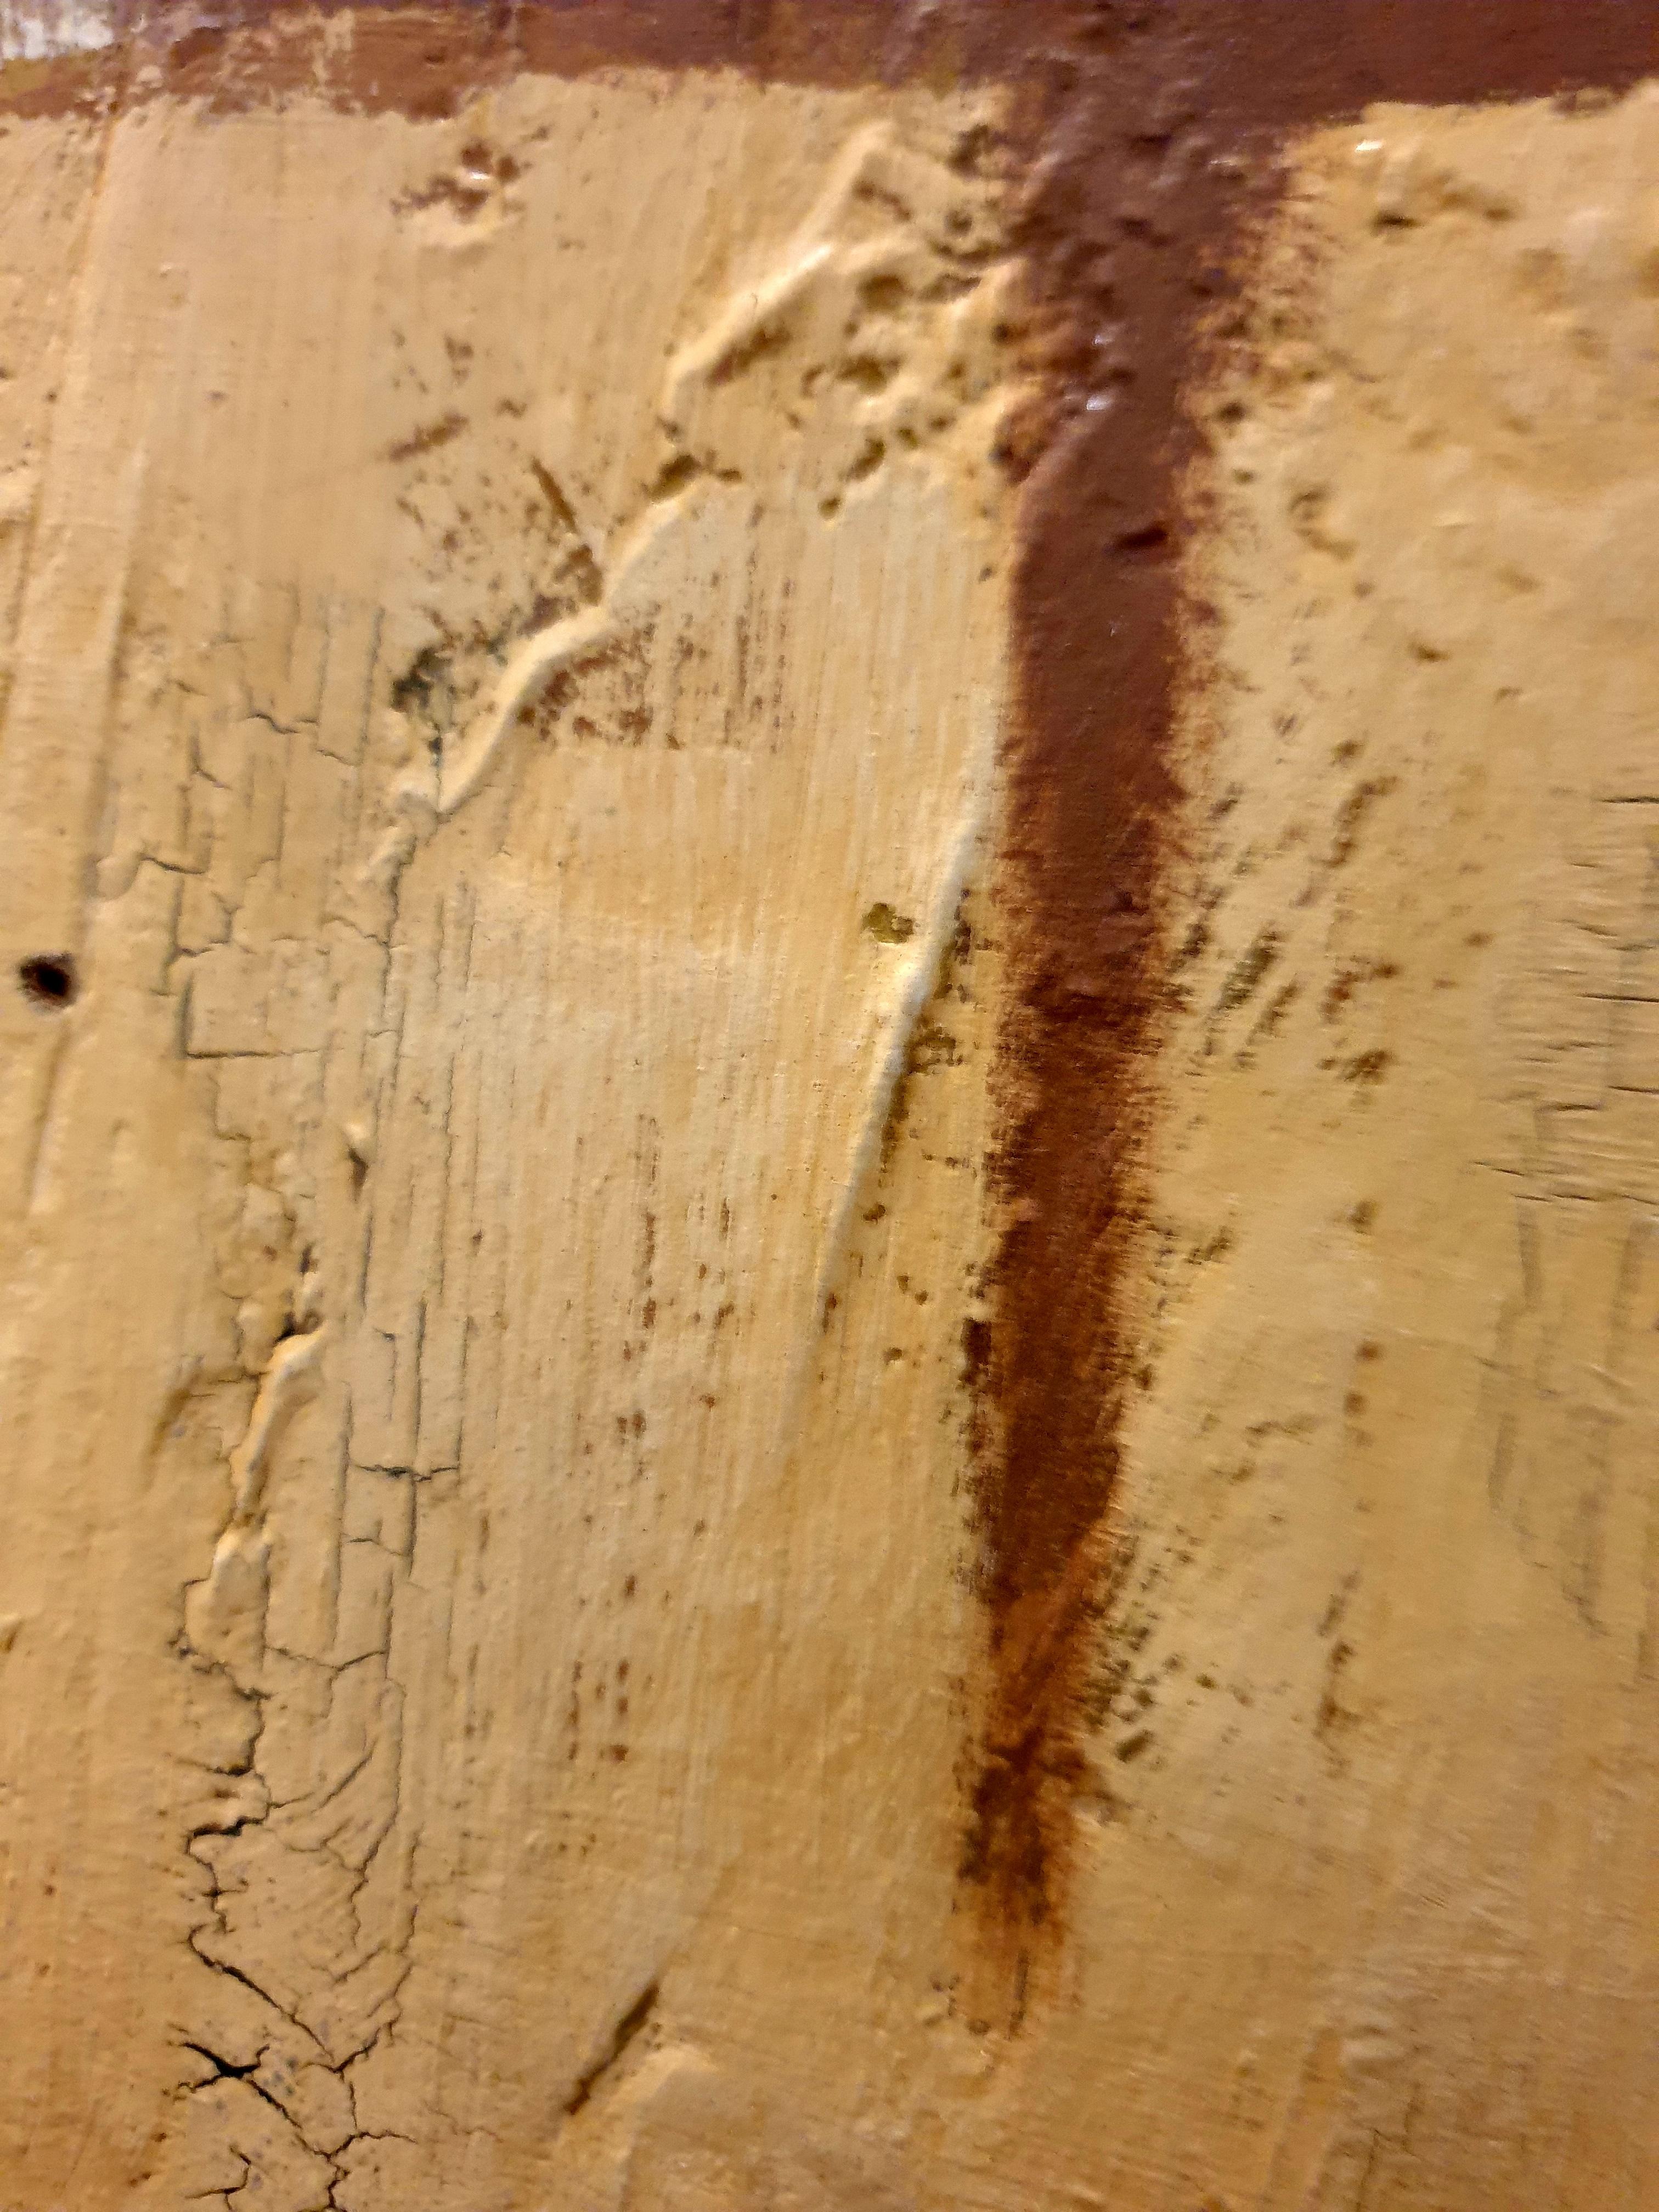 Großes abstraktes geometrisches Acryl- und Ölgemälde auf Sperrholz aus den 1970er Jahren, signiert mit Rivel und datiert 1977 unten links.

Zahlreiche Farbfelder in gedeckten Farben reihen sich aneinander. Es sind die Formen und der Raum zwischen